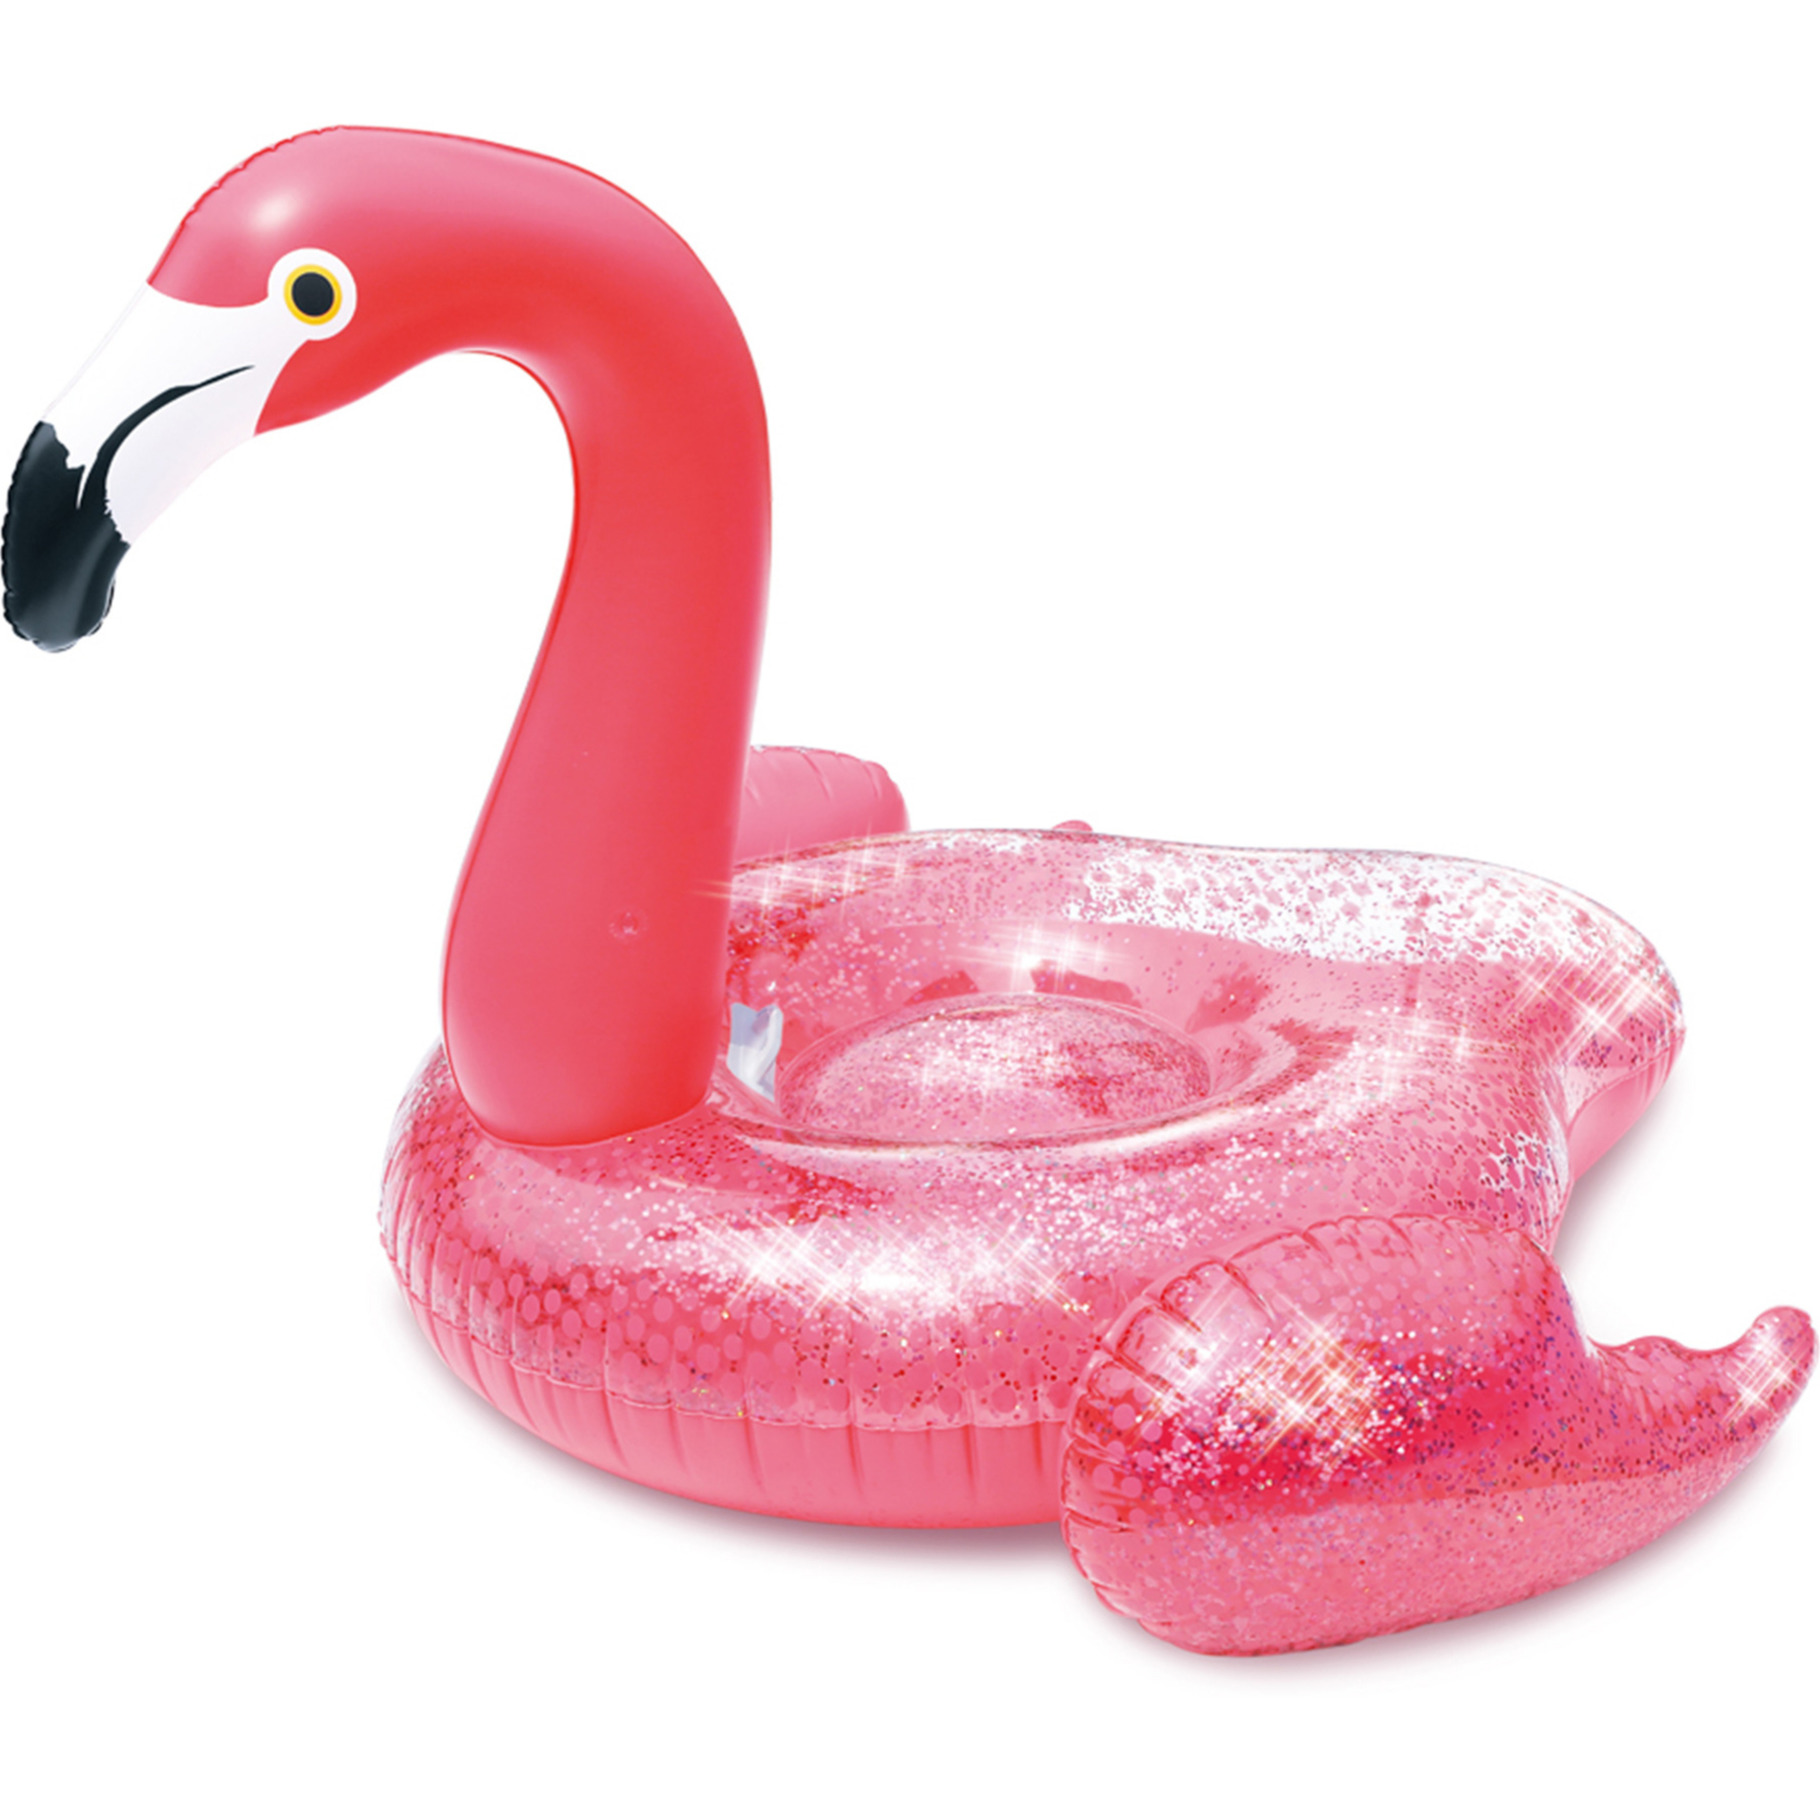 Waterspeelgoed roze glitter flamingo ride-on/luchtbed 138 x 140 x 98 cm voor jongens/meisjes/kindere